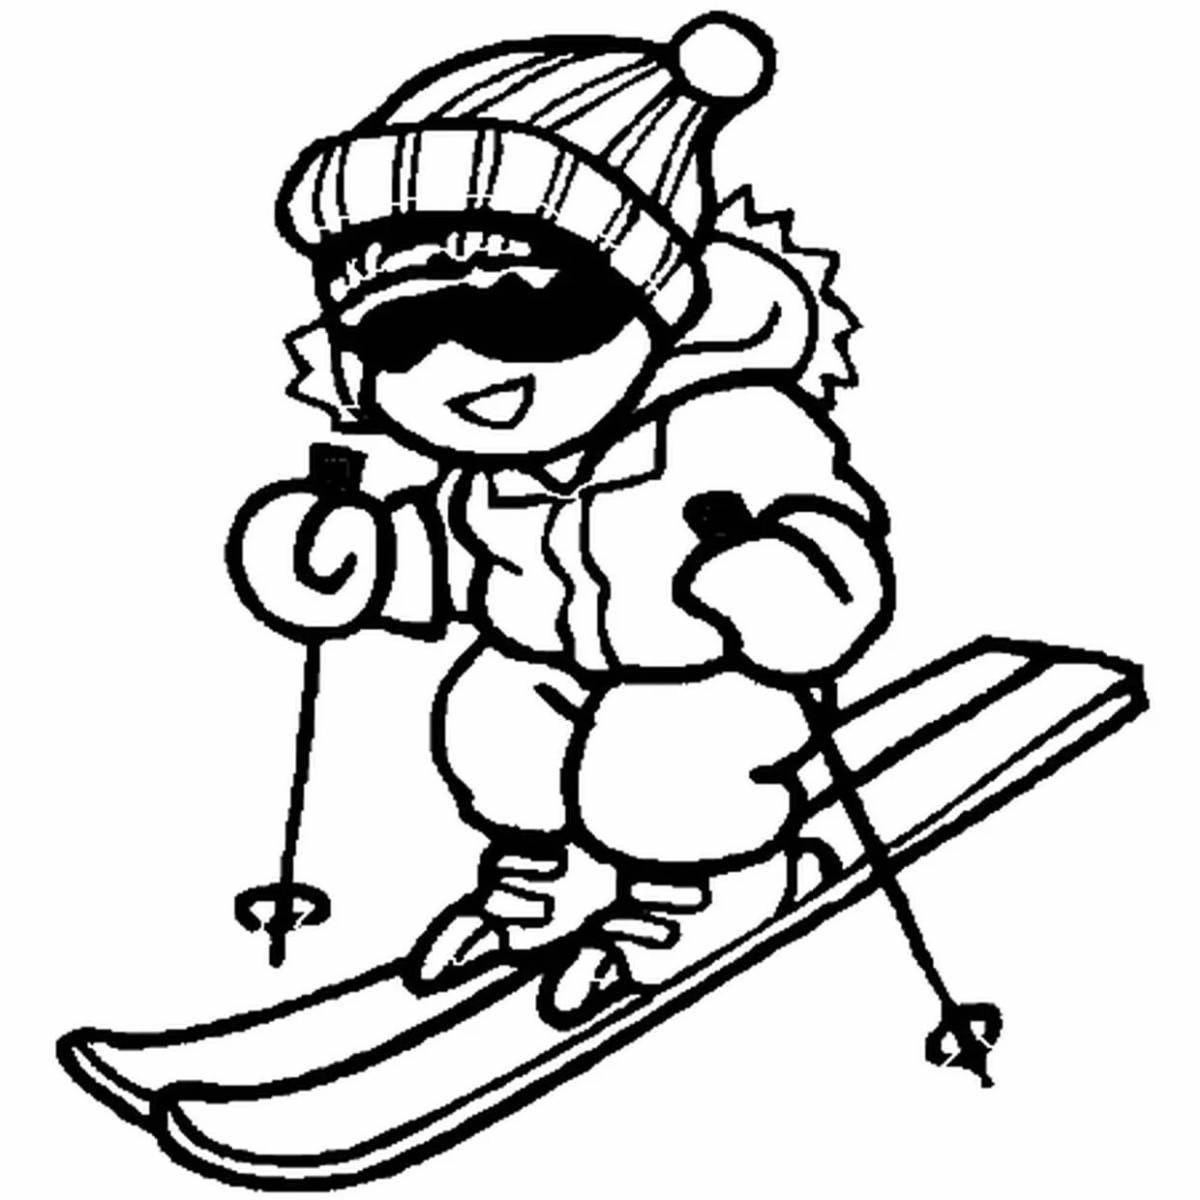 Fun coloring book for skiing